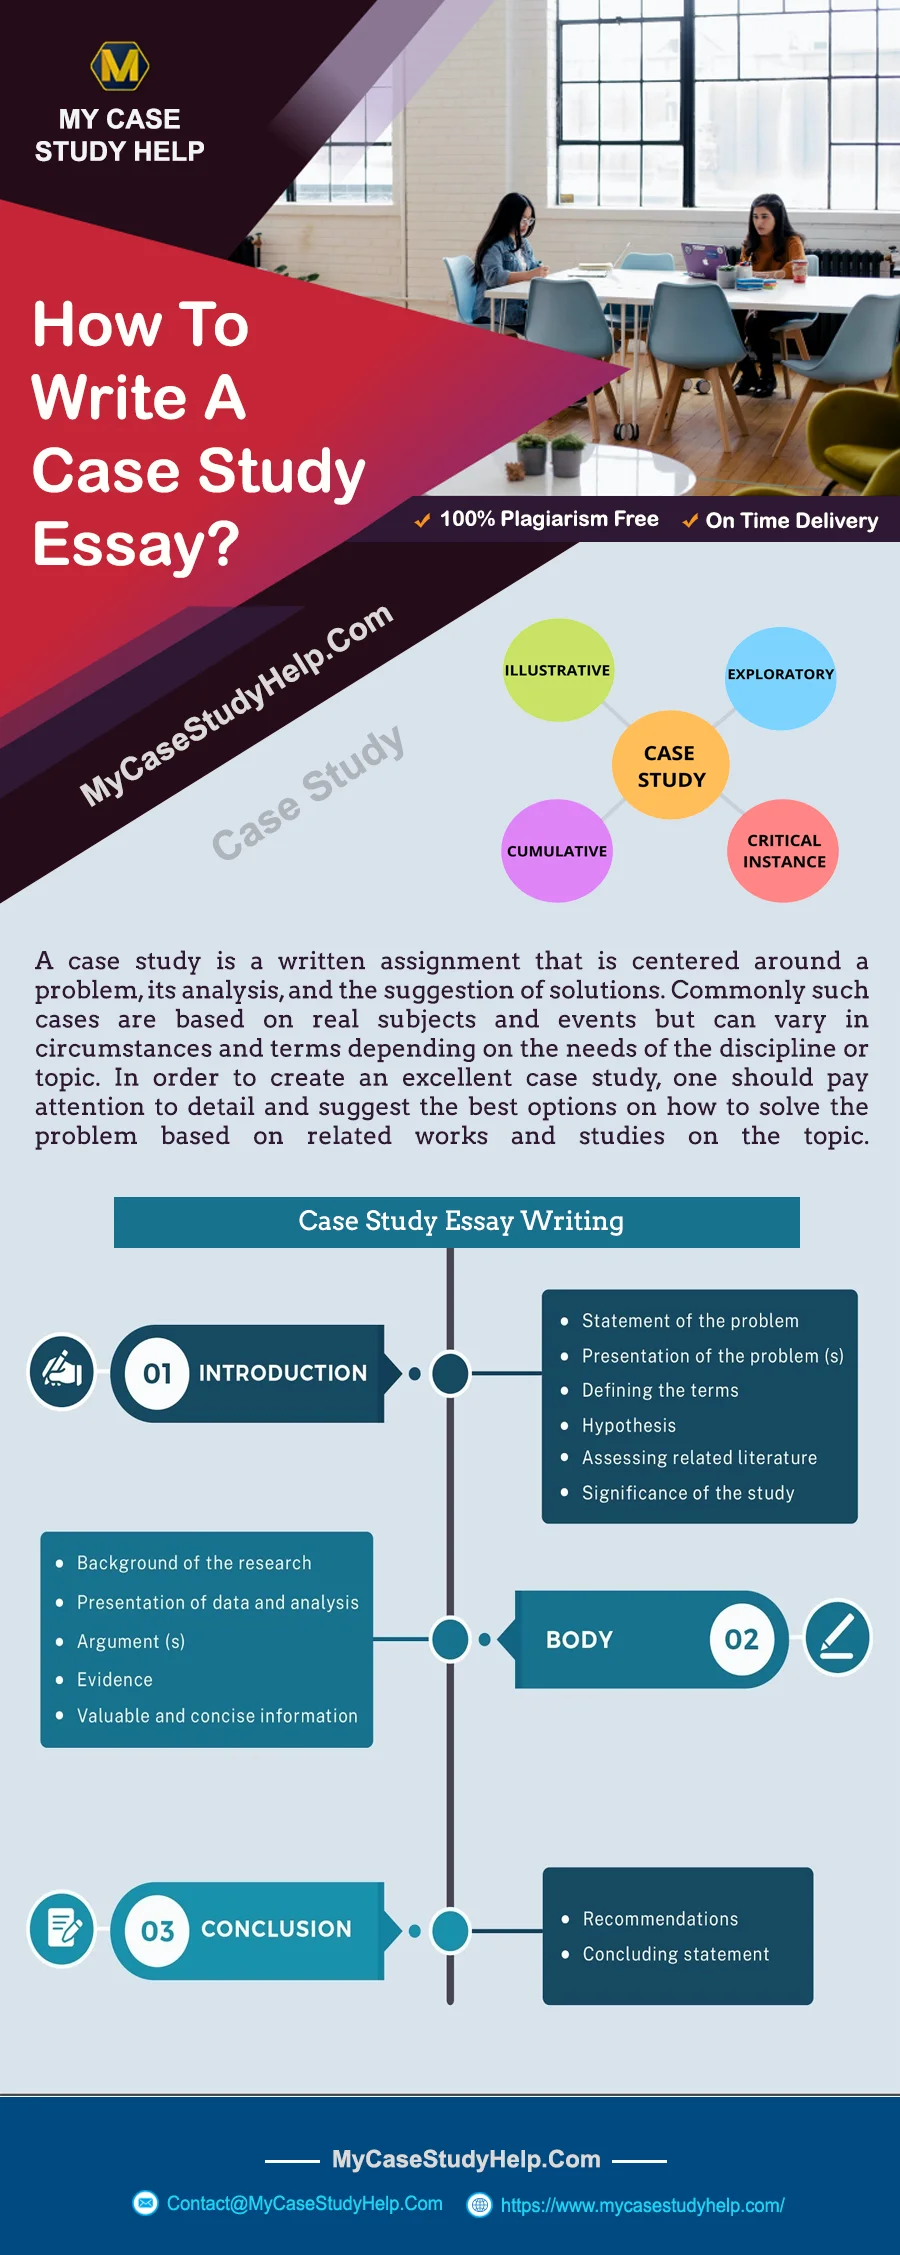 How To Write A Case Study Essay